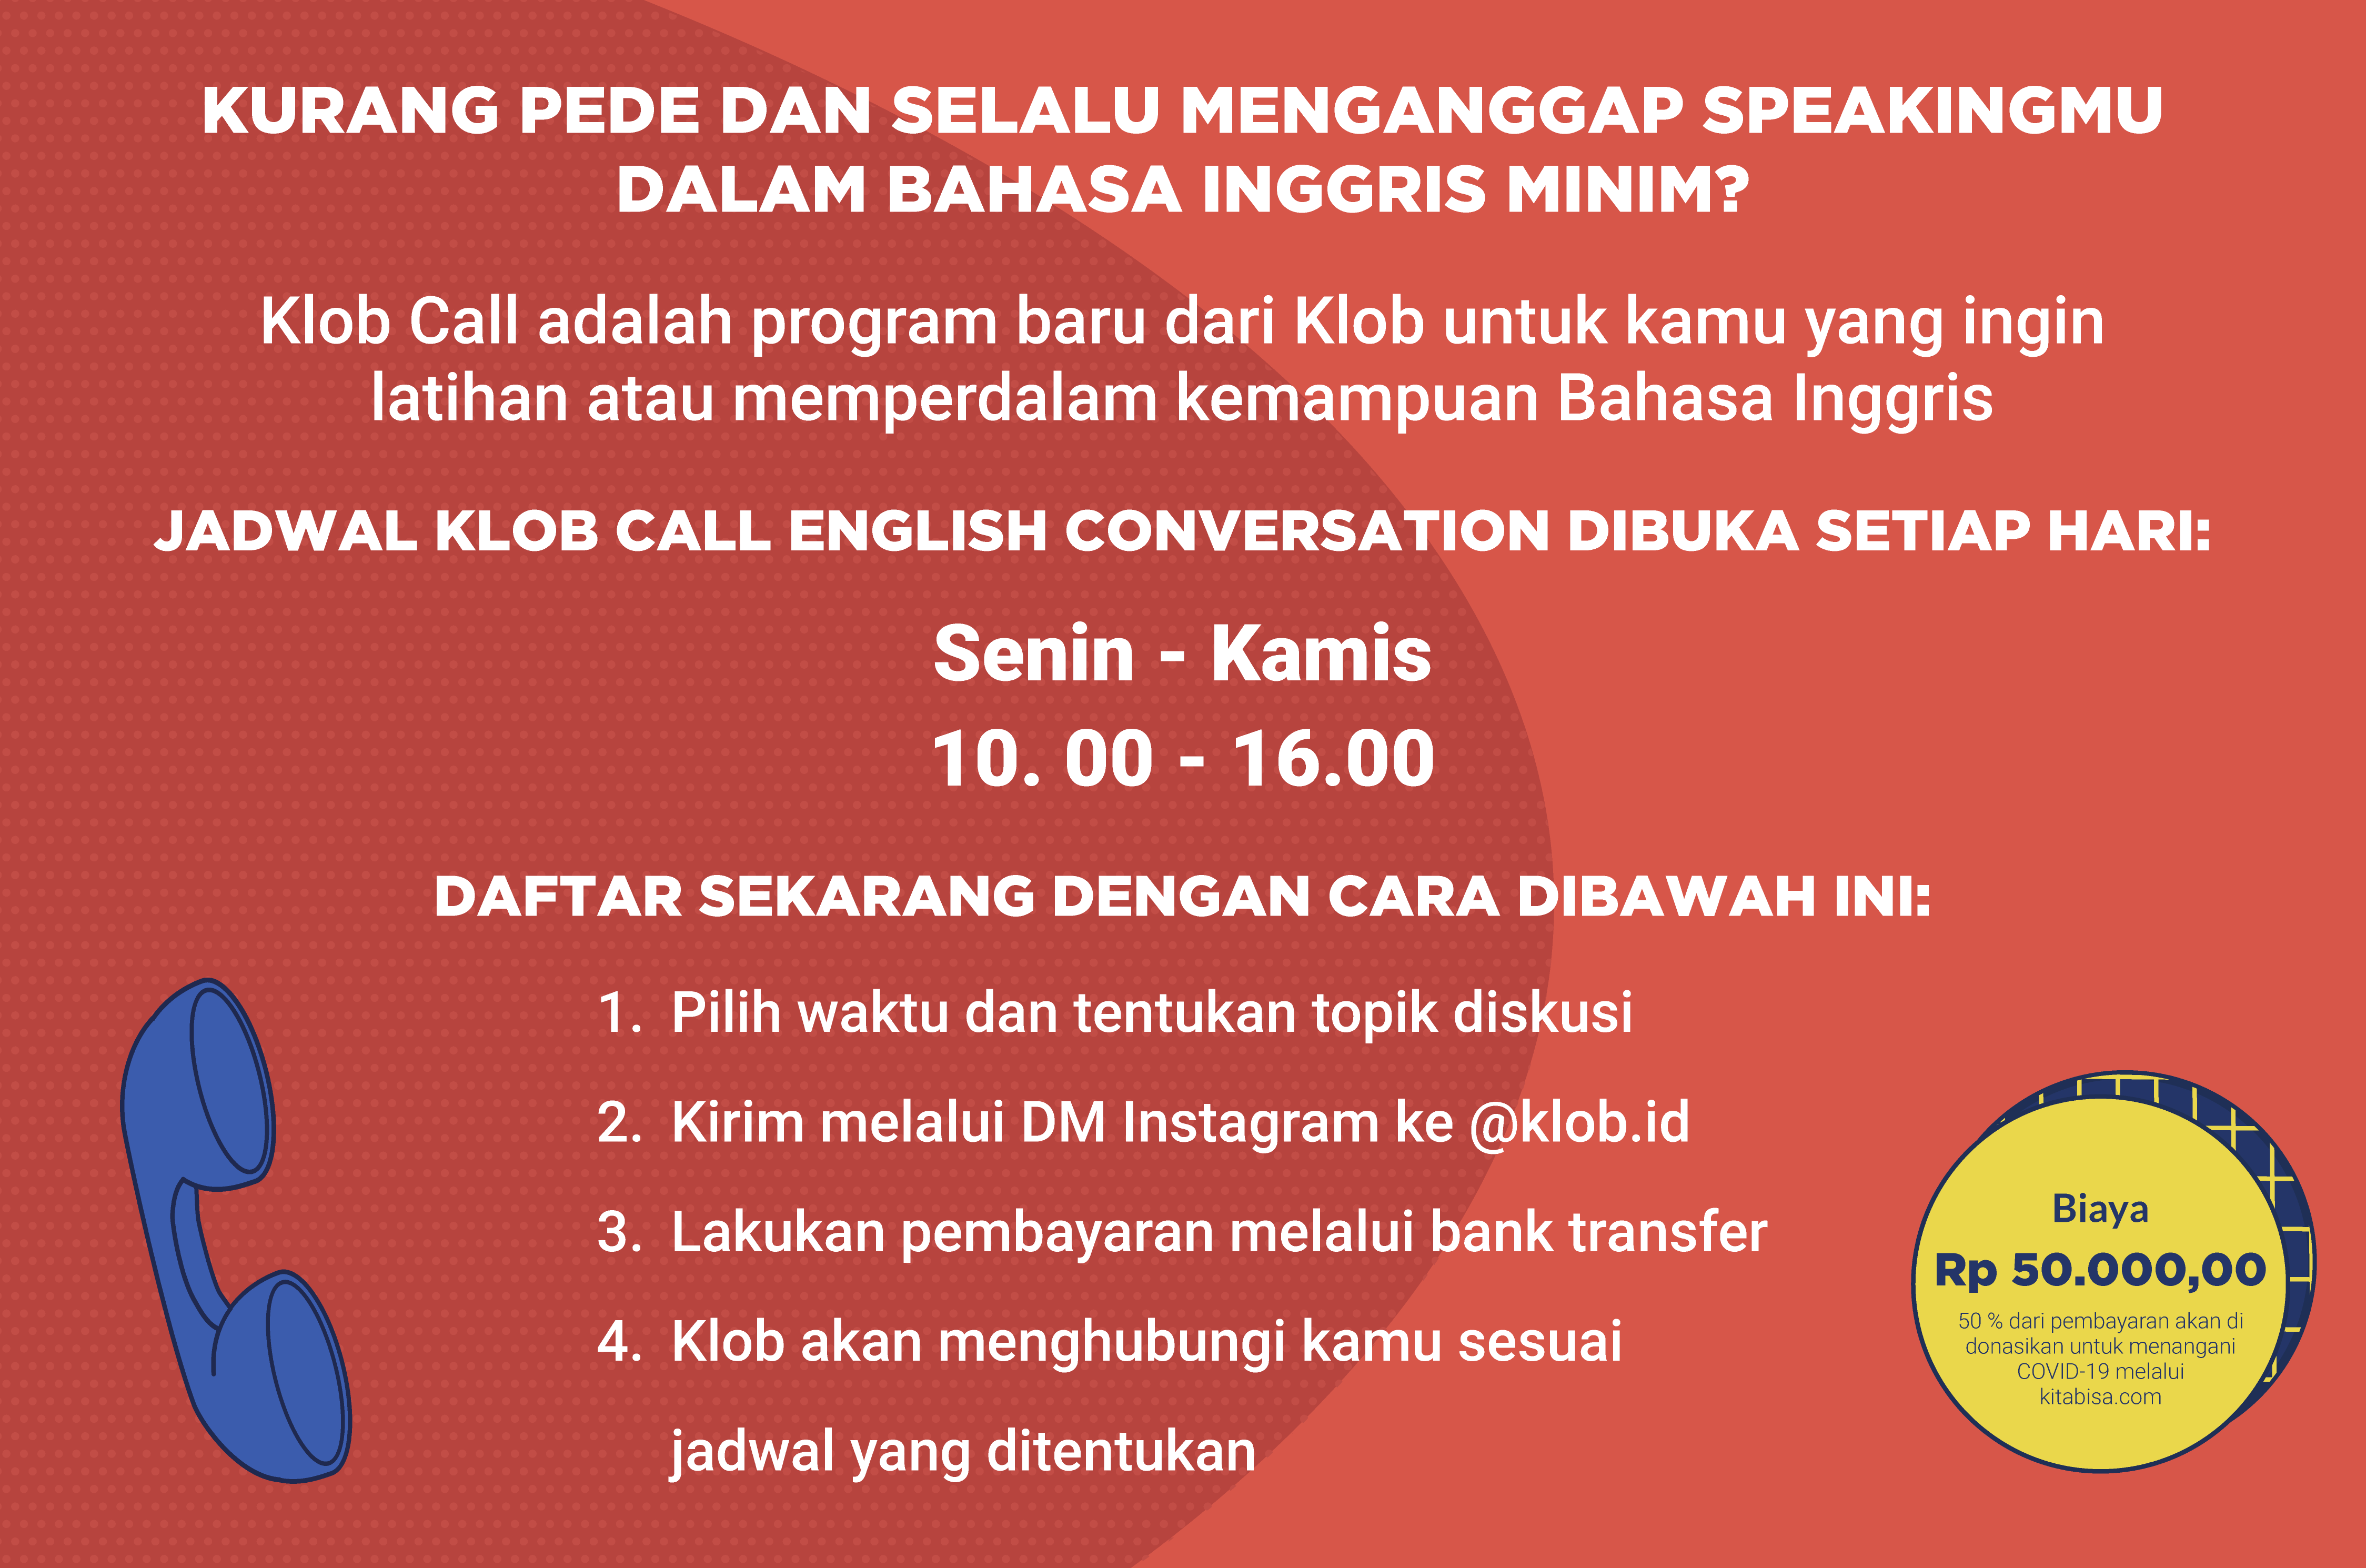 Memberikan informasi mengenai Klob Call; pelayanan telpon yang diberikan klob yang berfokus pada pembelajaran bahasa Inggris